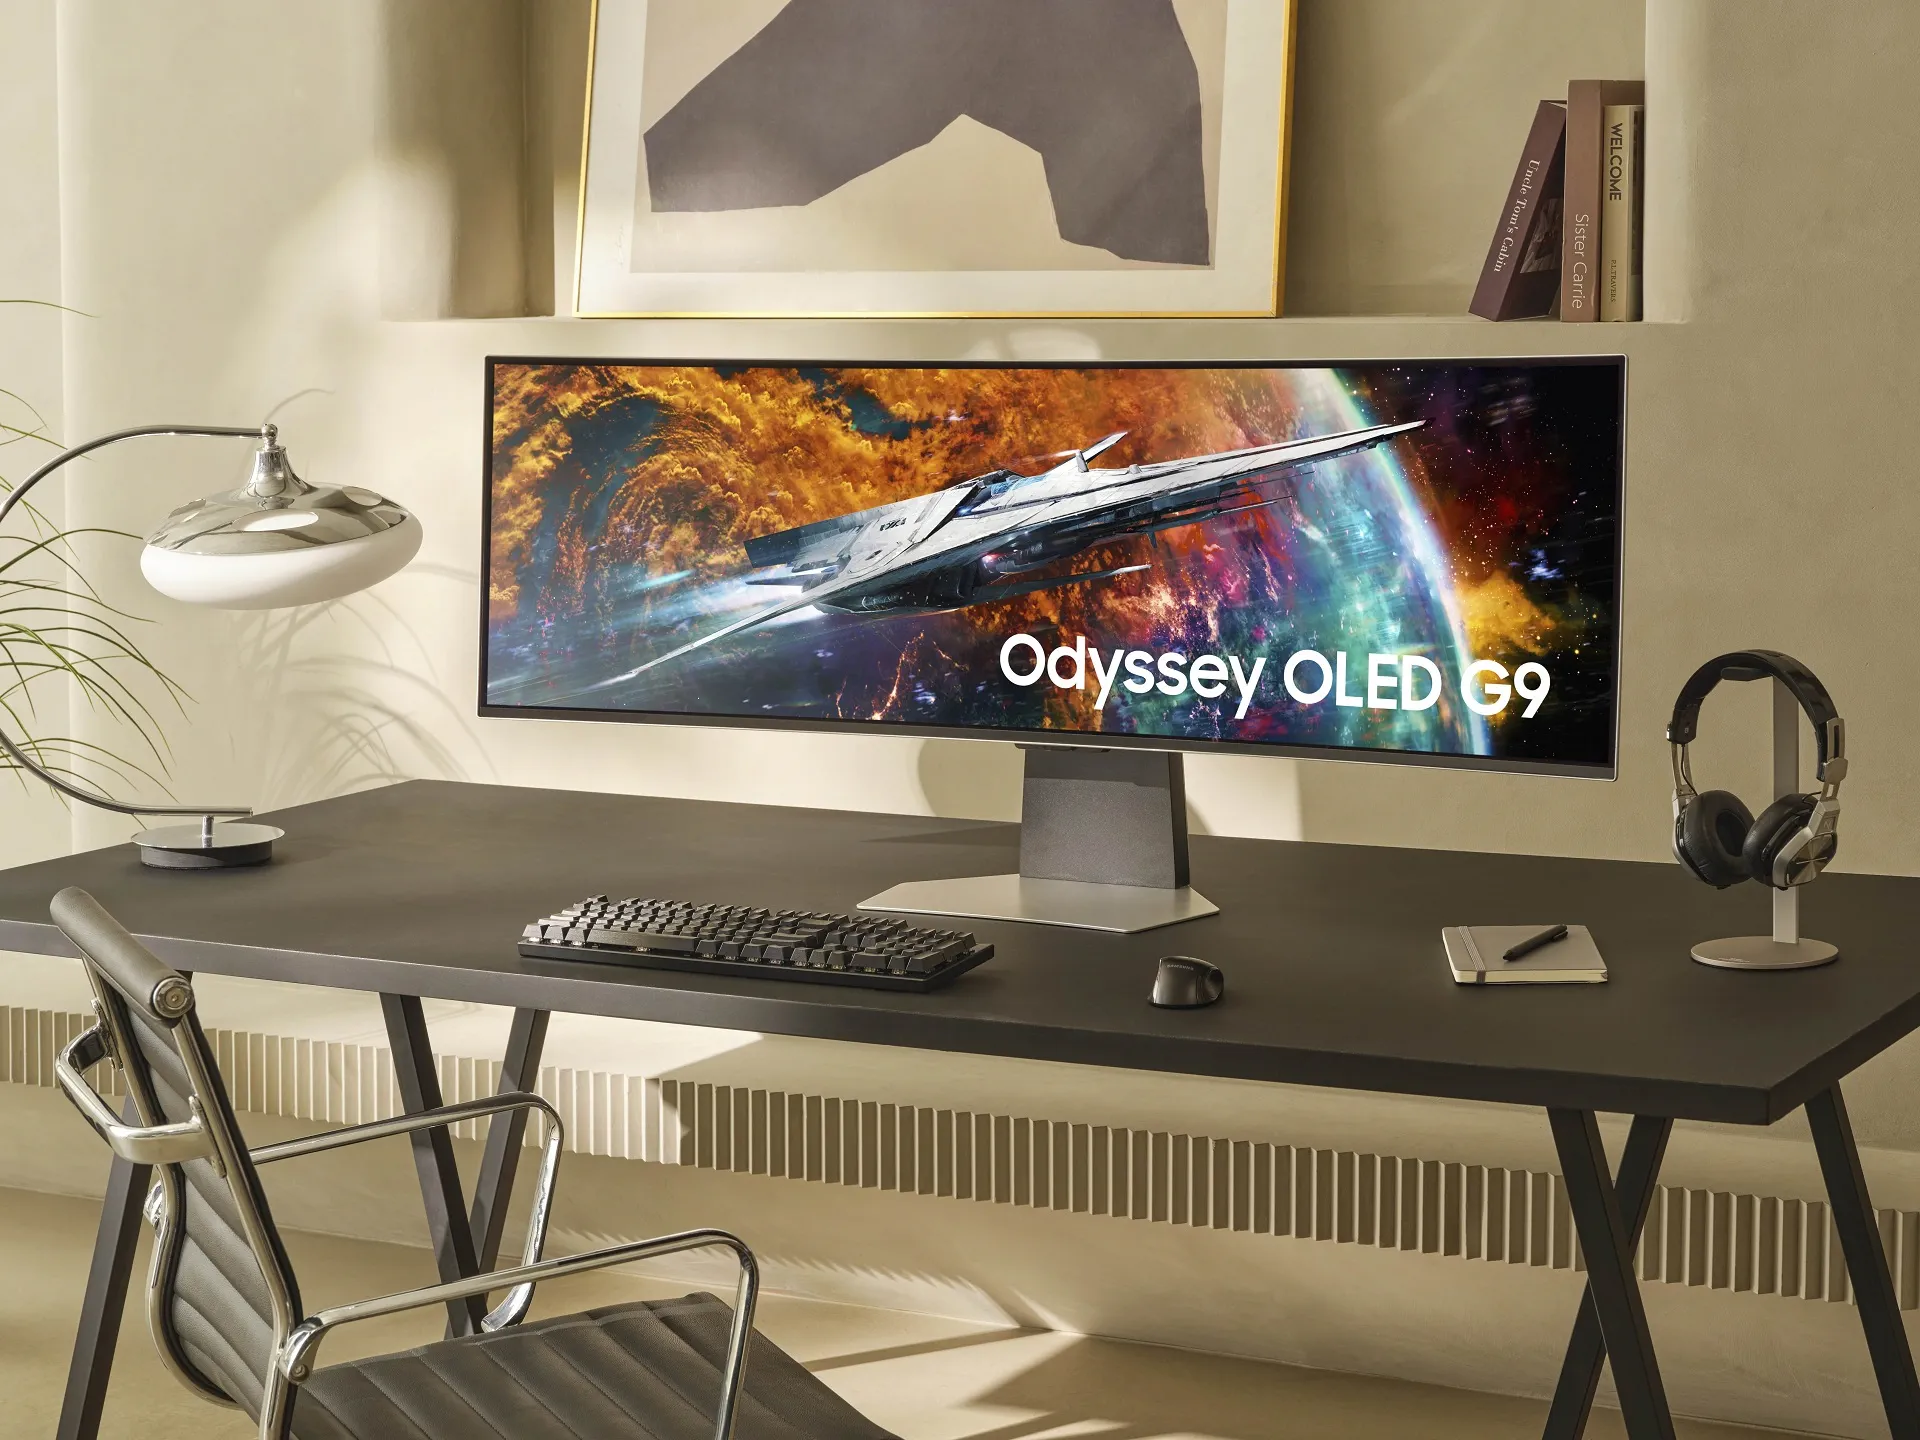 Odyssey OLED G9: Màn hình chơi game OLED đầu tiên trên thế giới với công nghệ AI tiên tiến